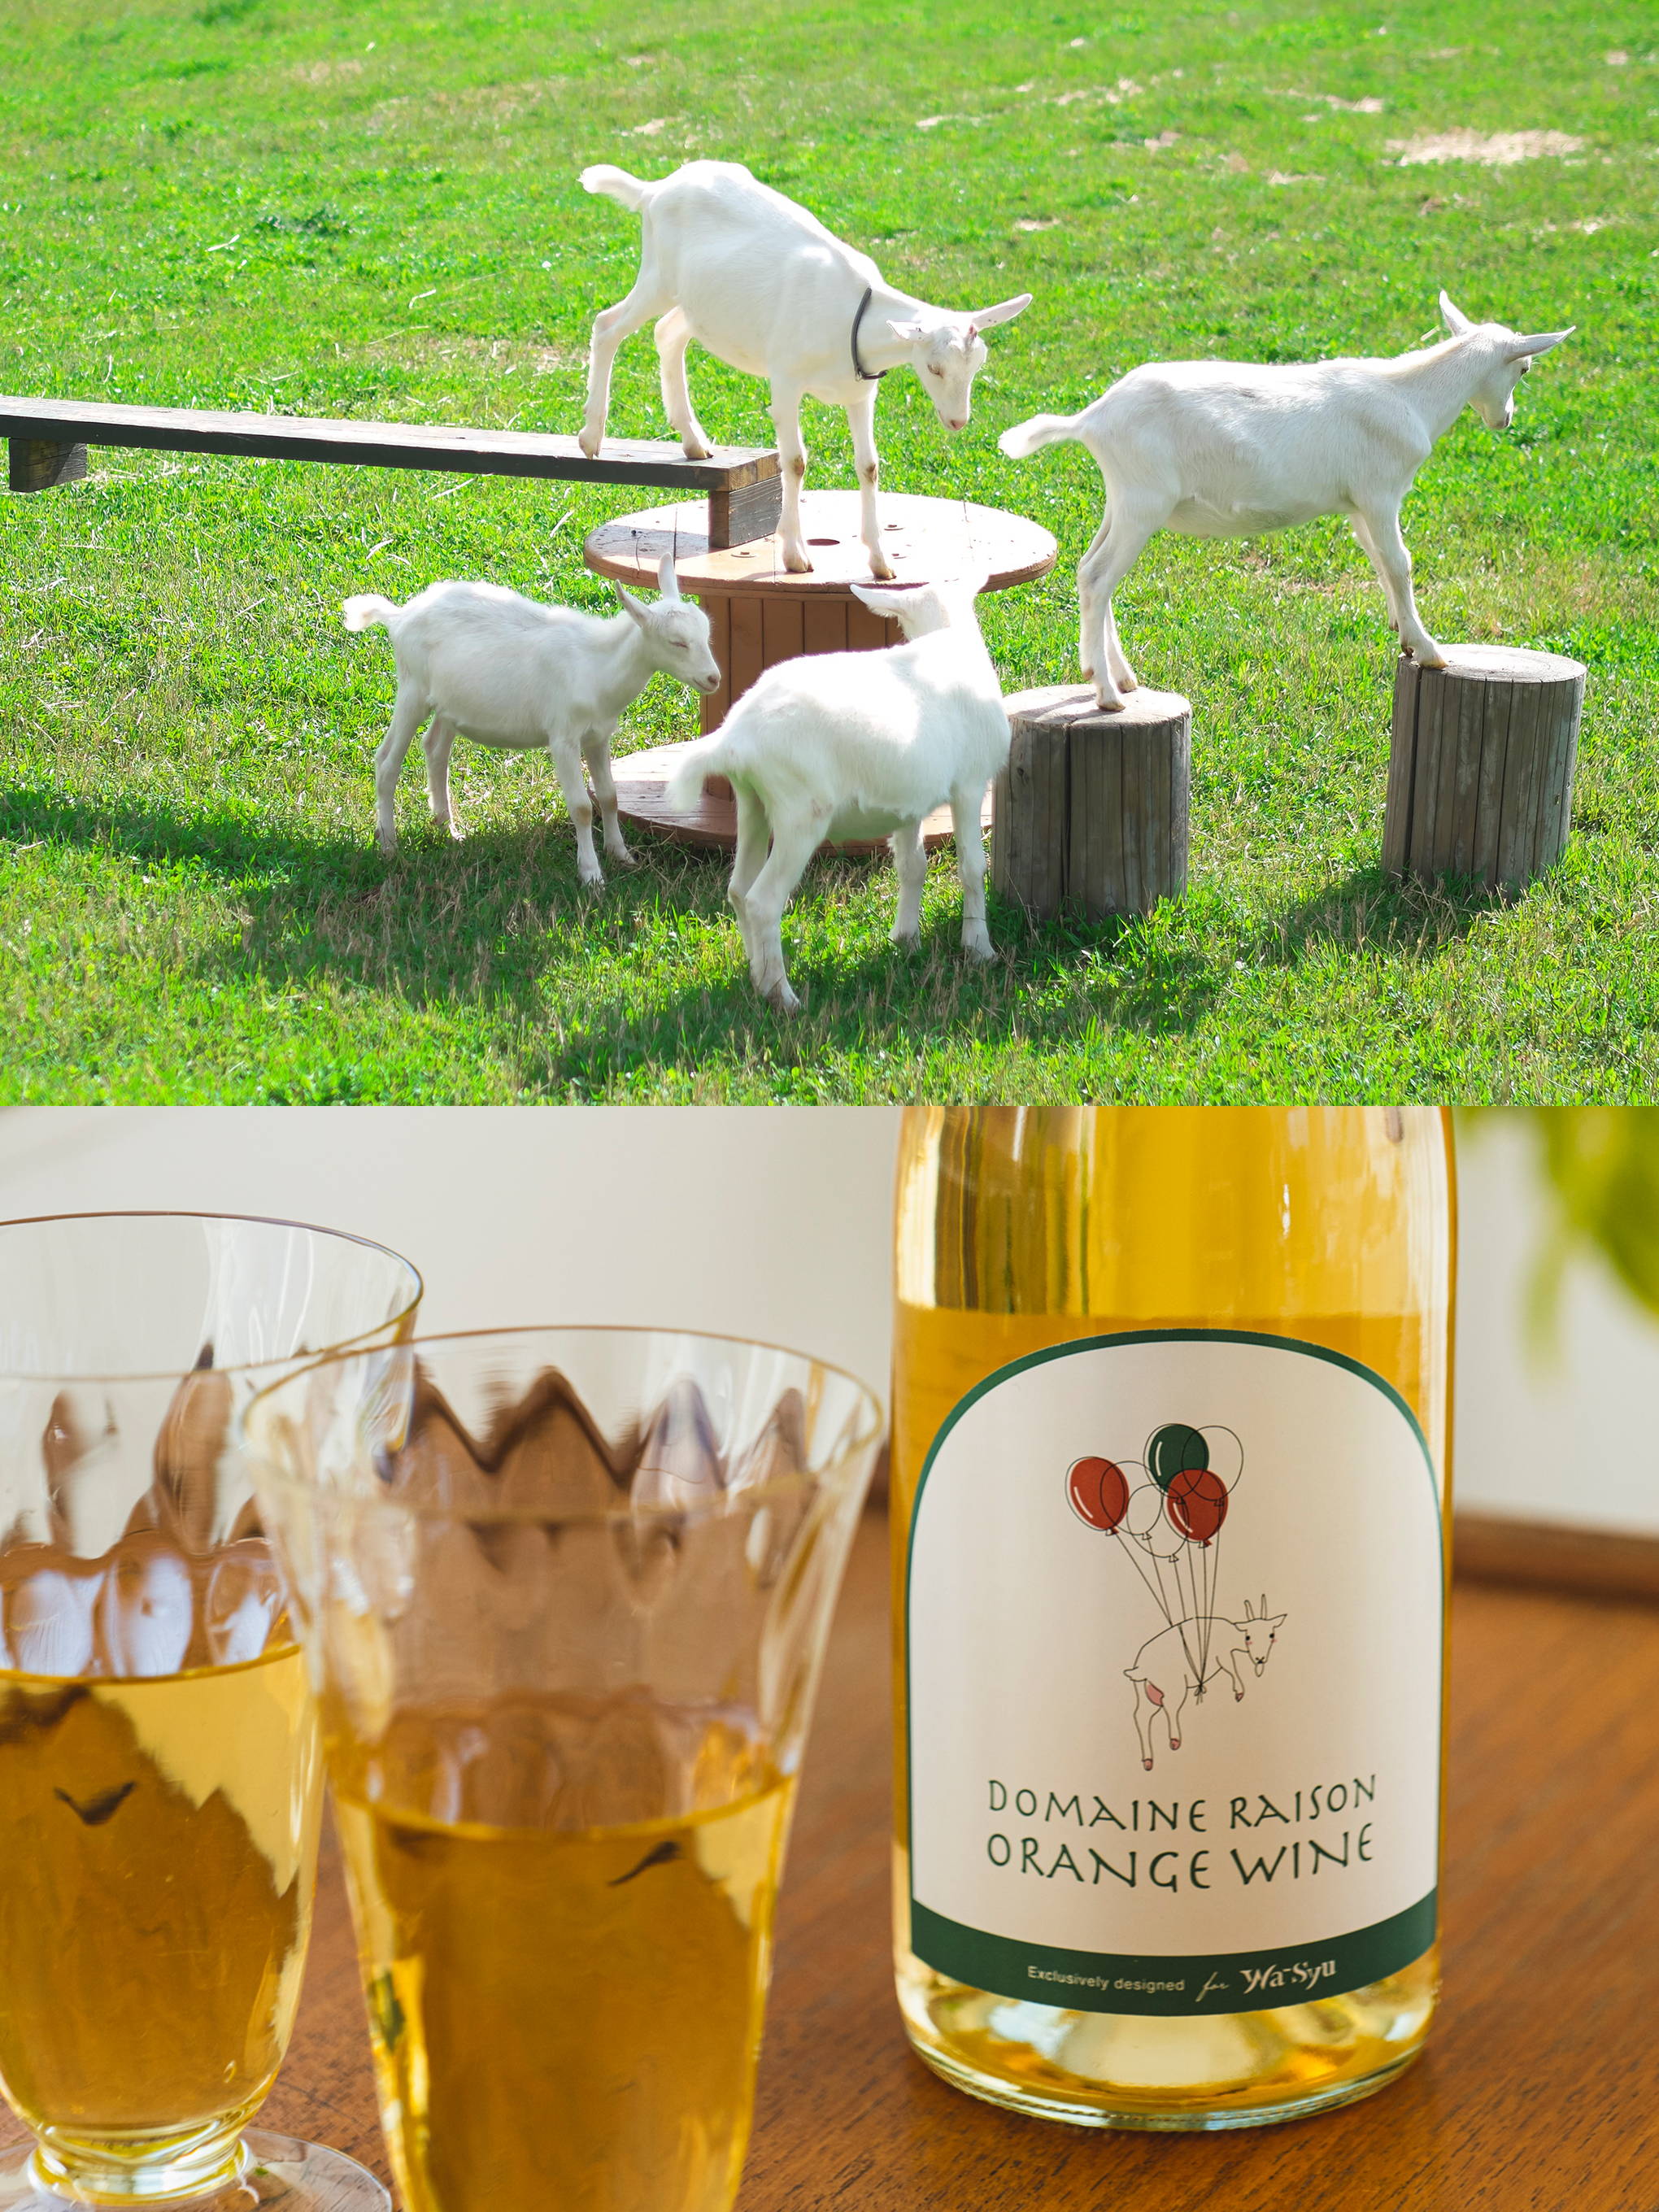 ヤギと共に、サスティナブルなワイン造りを目指す『ドメーヌレゾン』。アイコン的存在のキュートなラベルには、日本ワインらしく和の色を使って。